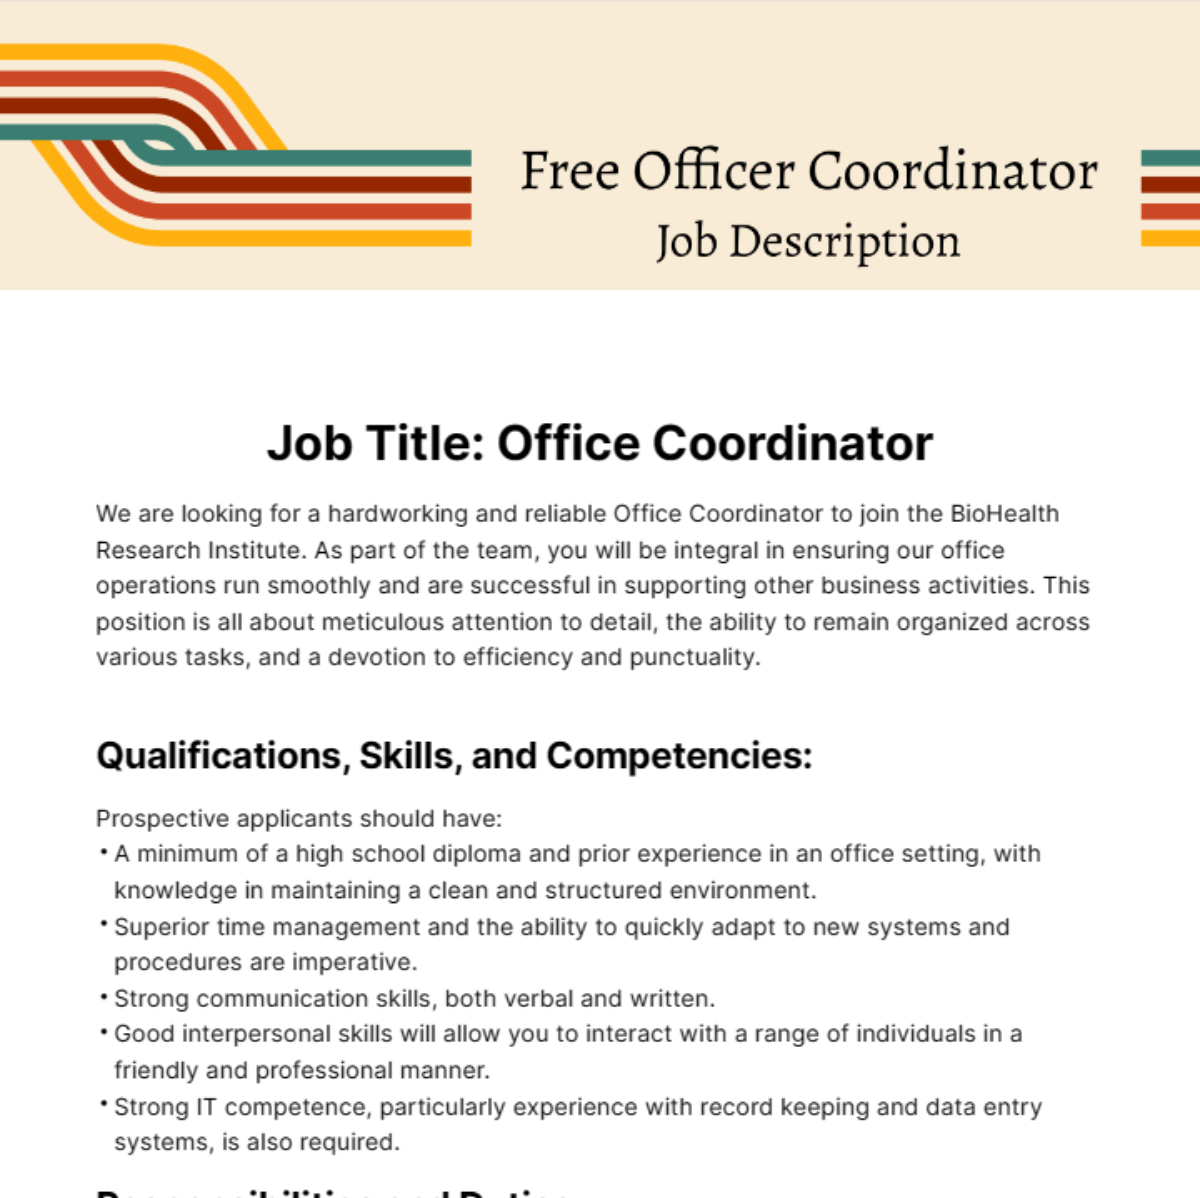 Free Office Coordinator Job Description Template